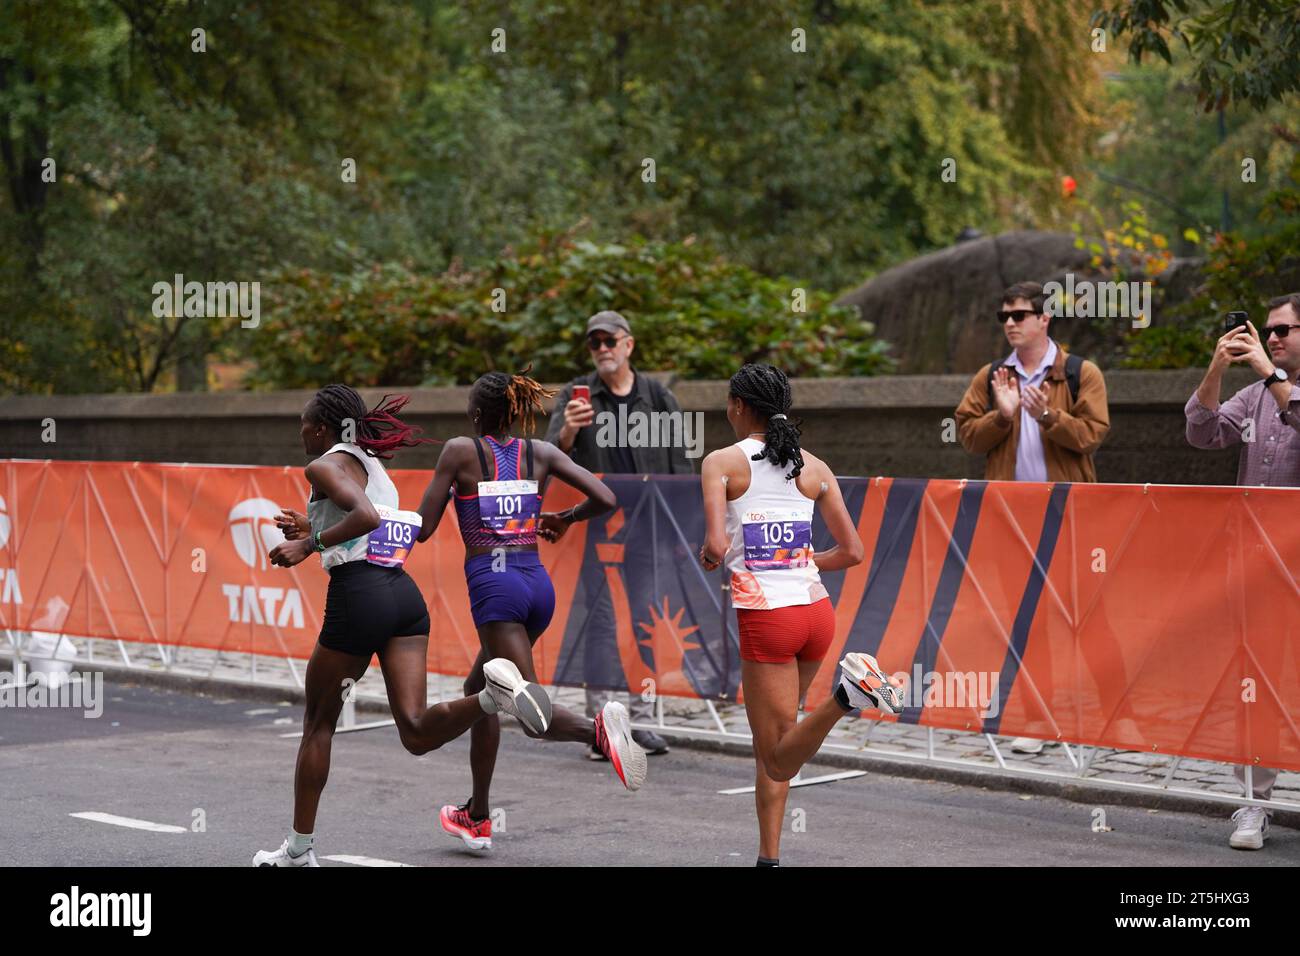 New York, New York, USA. November 2023. (SPO) TCS New York City Marathon 2023. 5. November 2023, New York, USA: Tamirat Tola aus Äthiopien schlägt Rekorde und gewinnt das NYC Marathon Männerrennen in 2:04:58, während Hellen Obiri aus Kenia das Frauenrennen mit 2:27:23 Uhr dominiert. Albert Korir und Letesenbet Gidey sichern sich den zweiten Platz, während Shura Kitata und Sharon Lokedi den 3. Platz beim prestigeträchtigen TCS New York Marathon 2023 sichern. Quelle: ZUMA Press, Inc./Alamy Live News Stockfoto